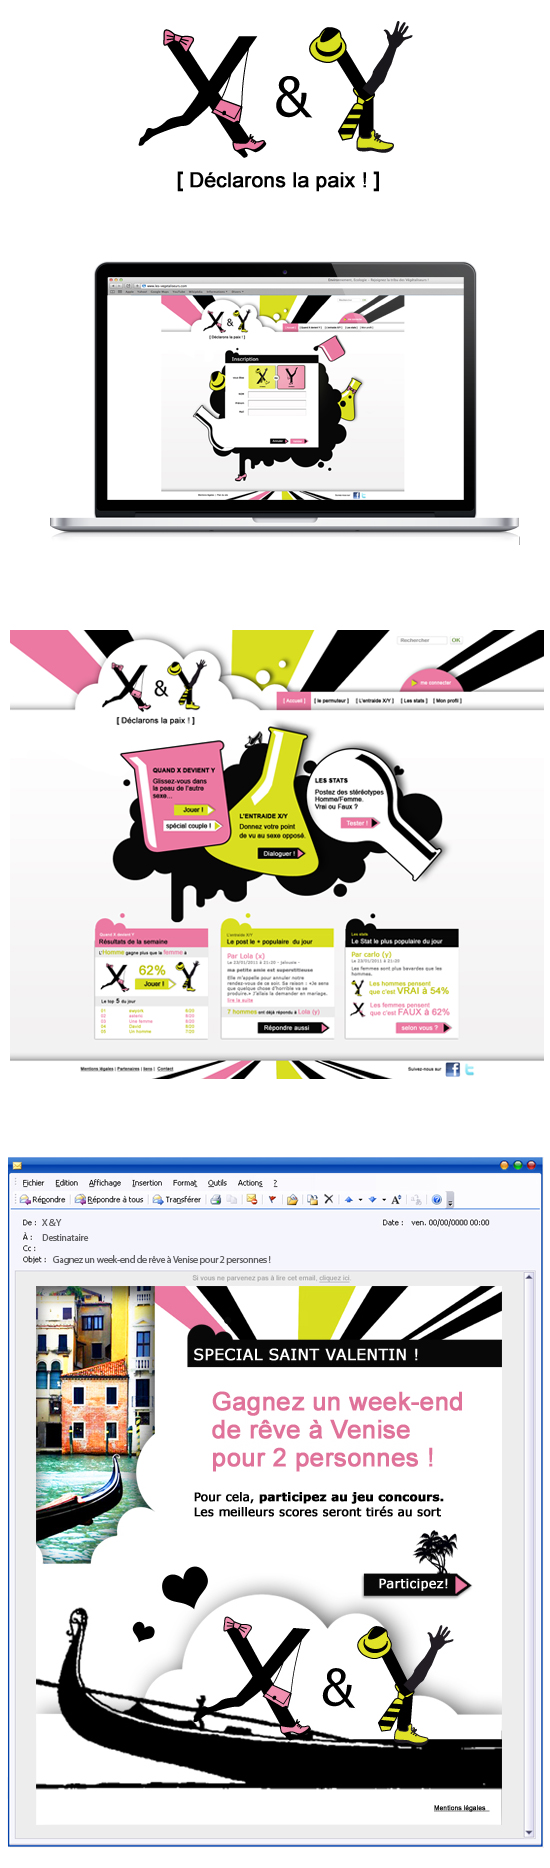 X & Y : Concept, design site et newsletter. Projet visant à présenter sur la toile une plateforme d'échanges entre hommes et femmes sur un ton ludique et décalé.